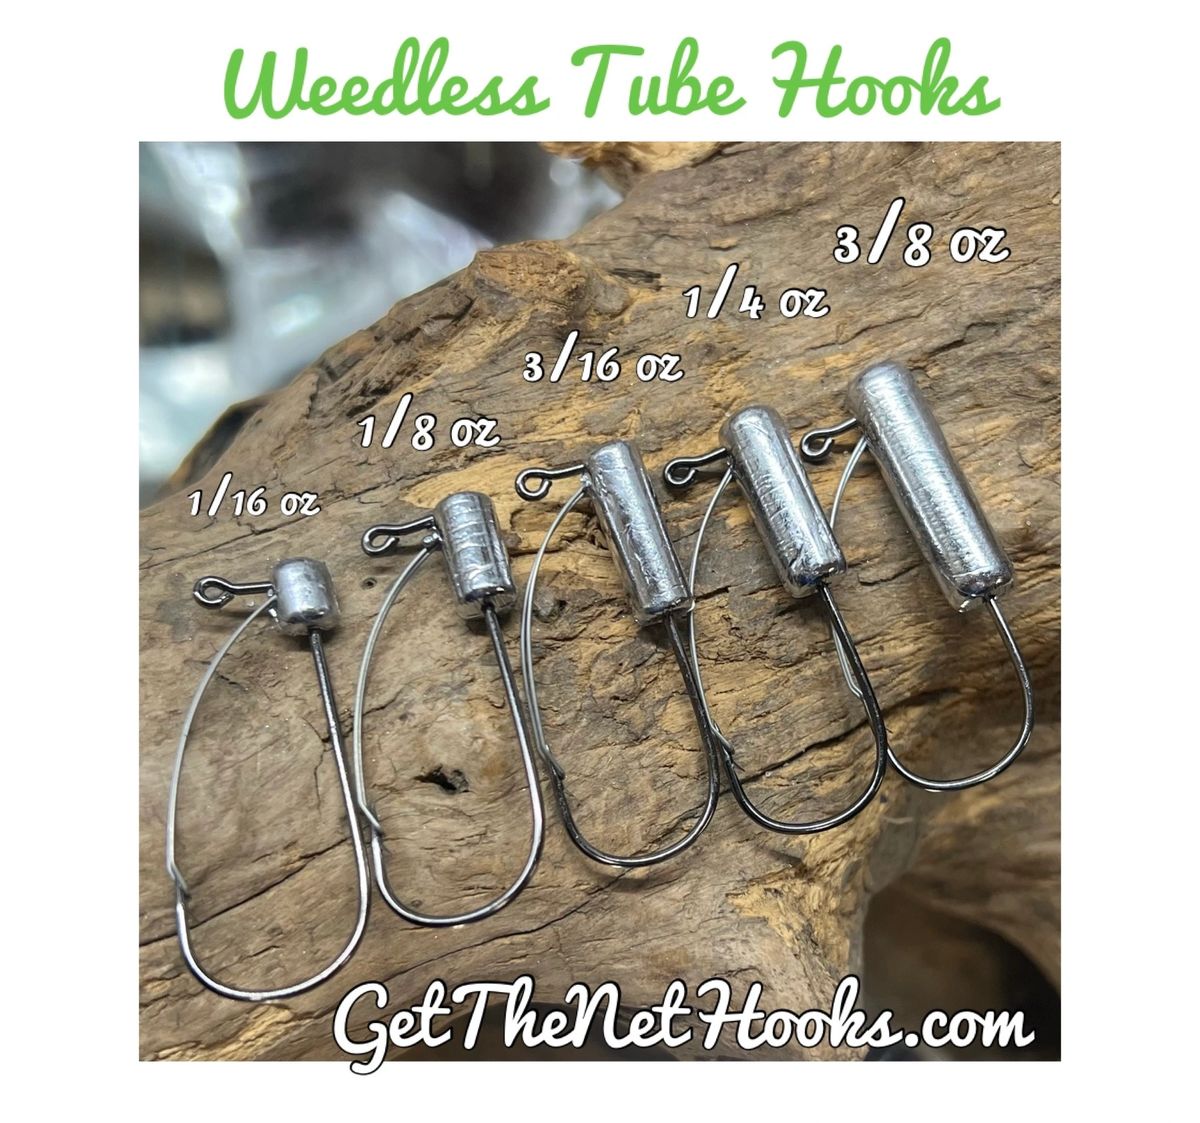 3/0 Weedless Tube Hooks